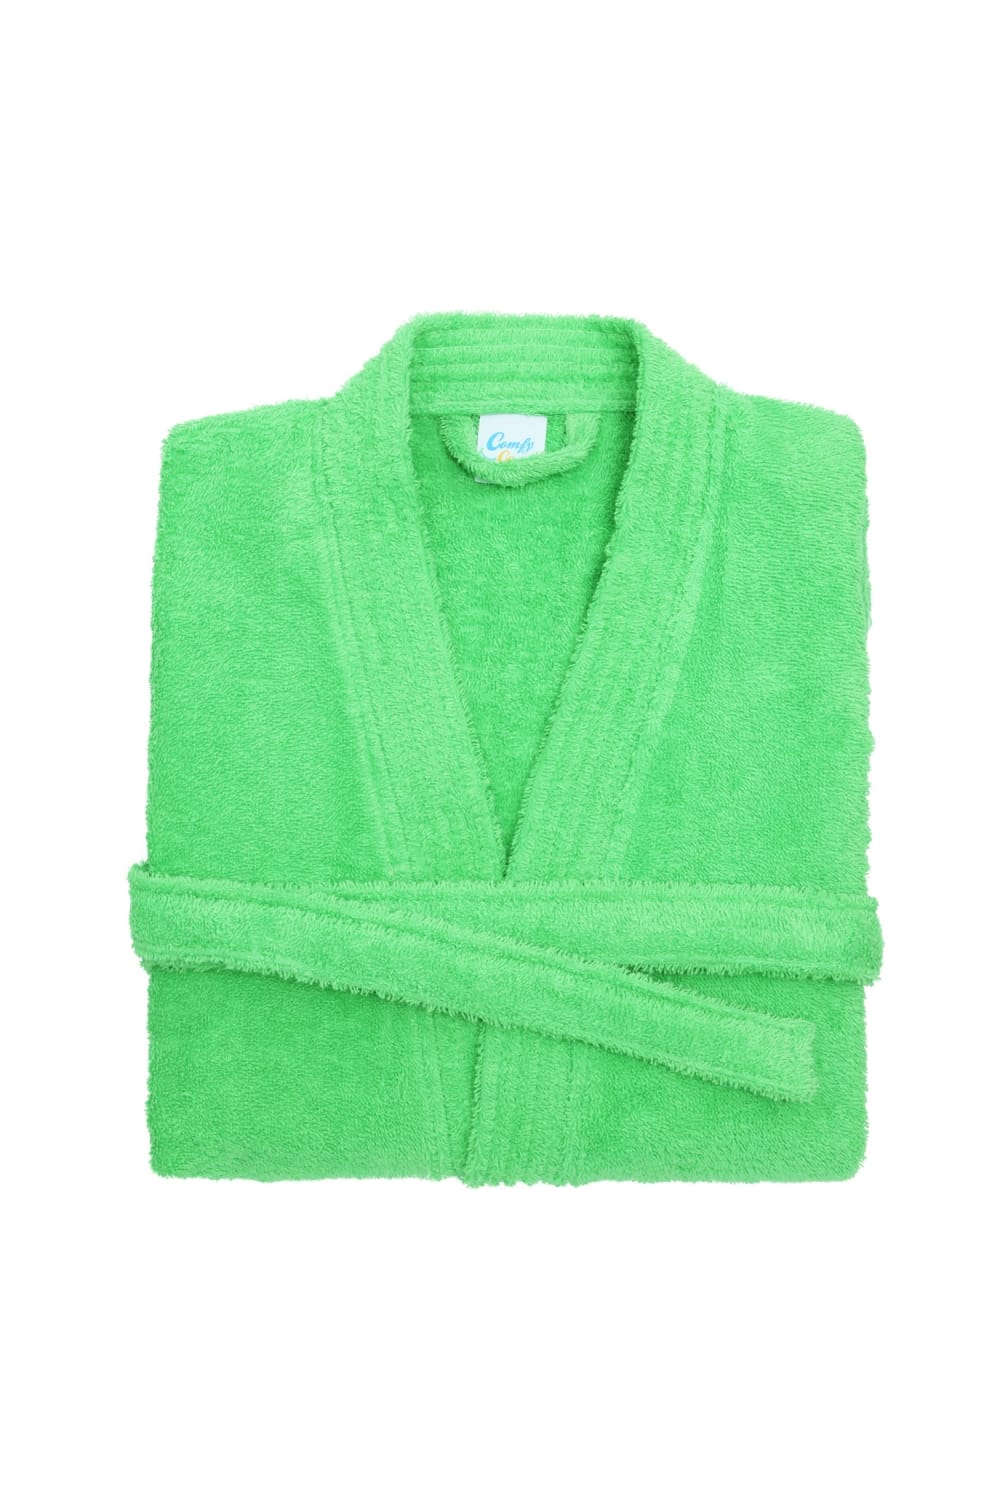 Comfy Unisex Co Bath Robe / Loungewear (Lime Green) (L/XL (Length 51inch))